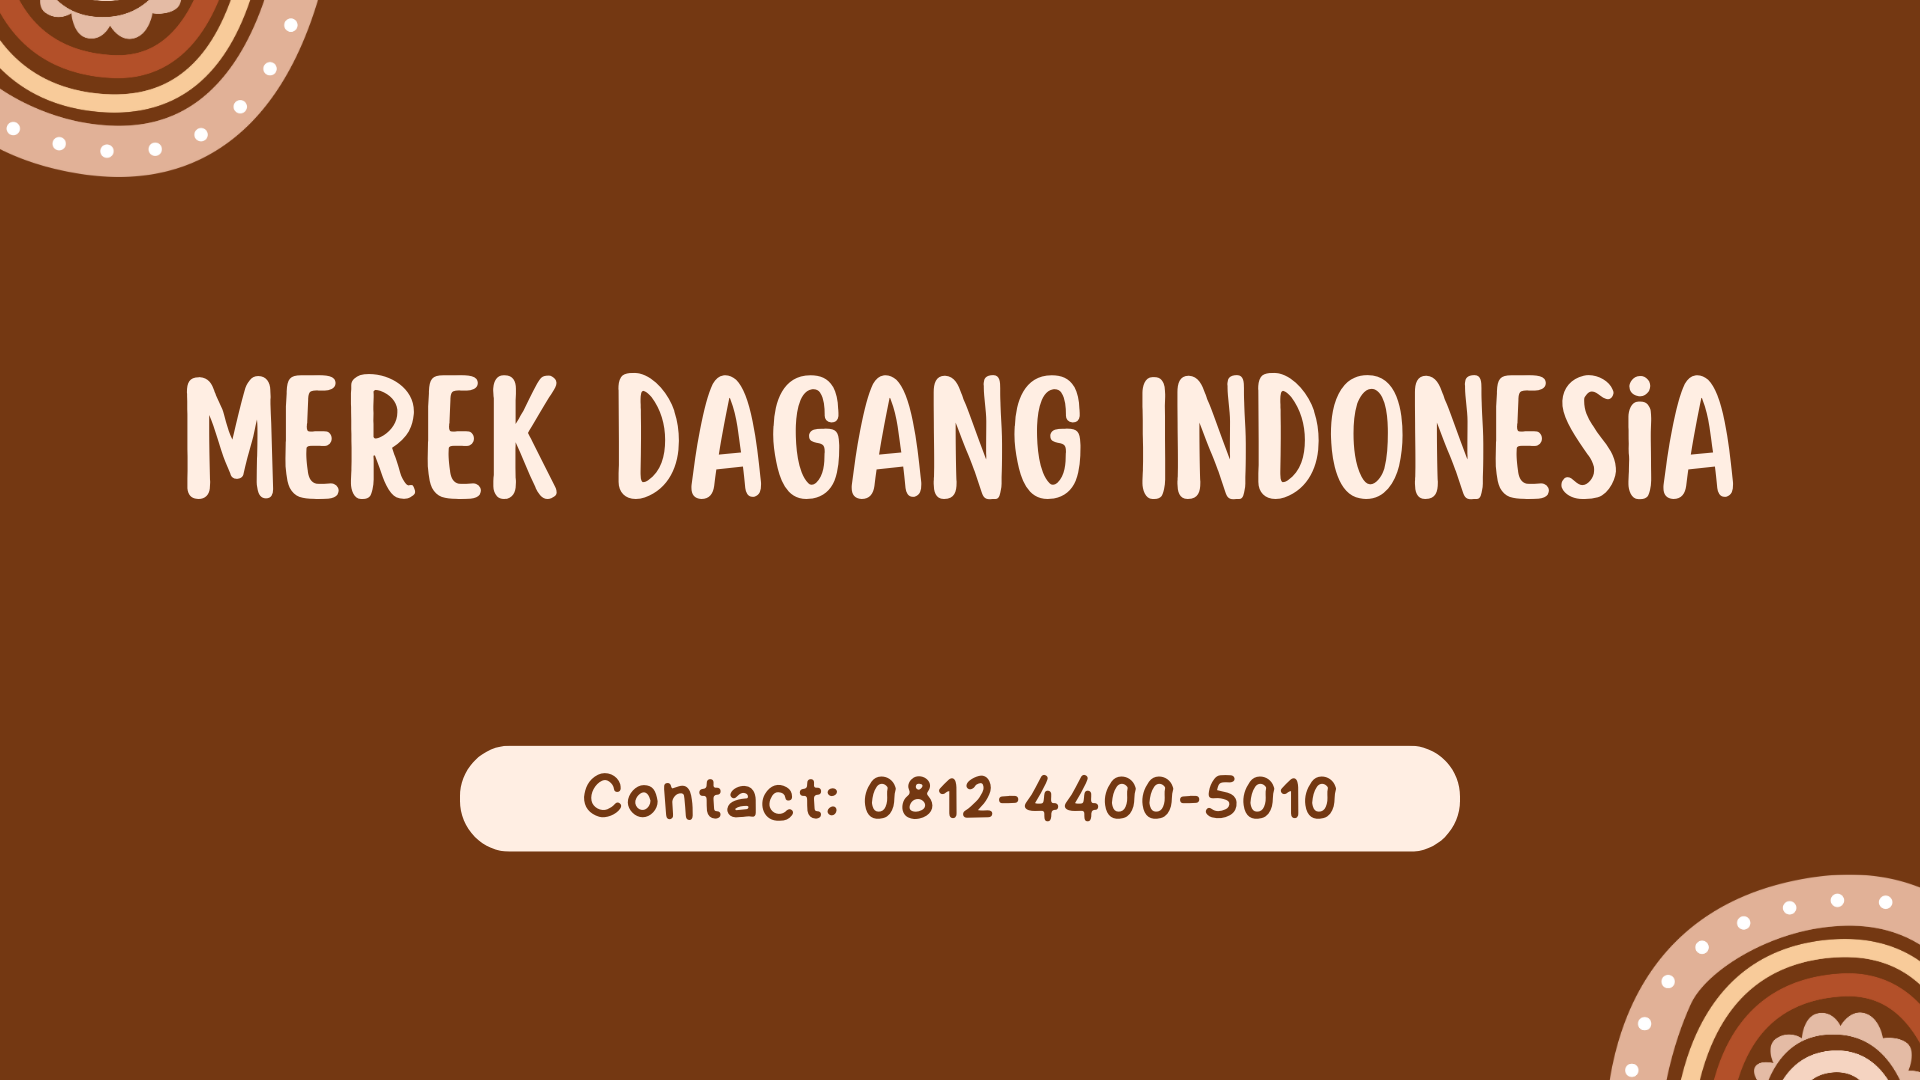 Merek Dagang Indonesia